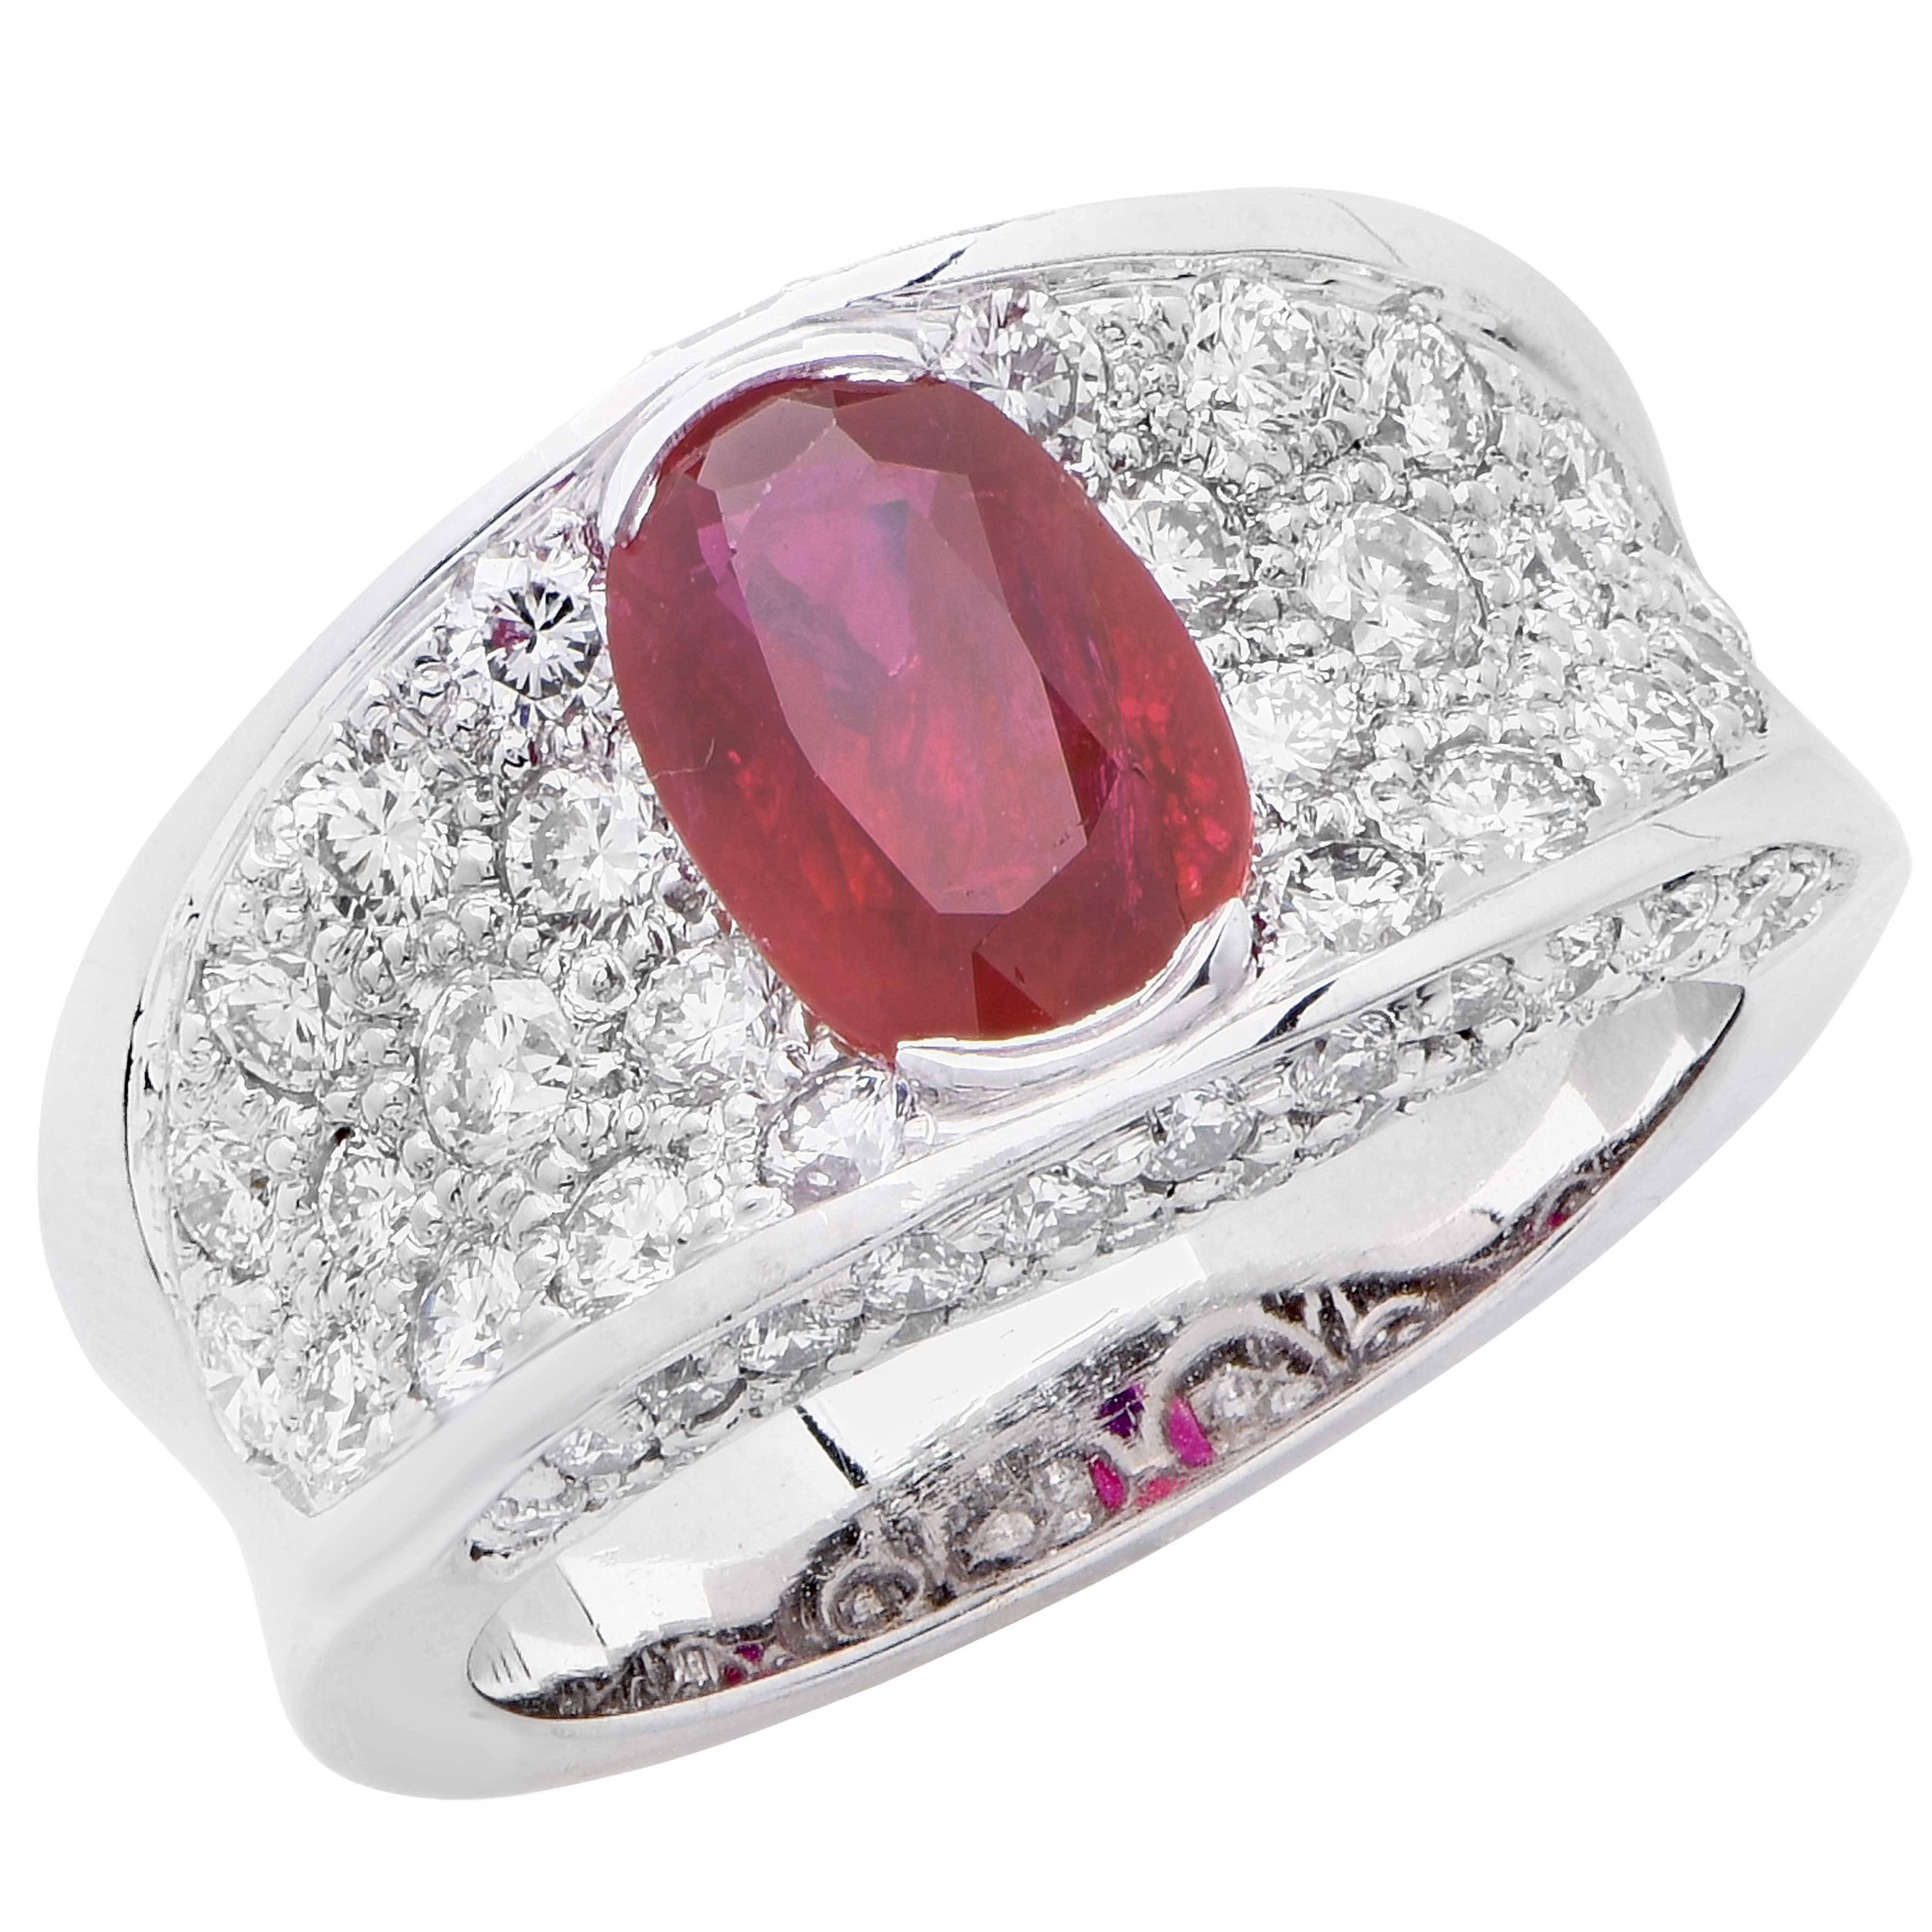 2.35 Carat Natural Ruby Diamond White Gold Ring